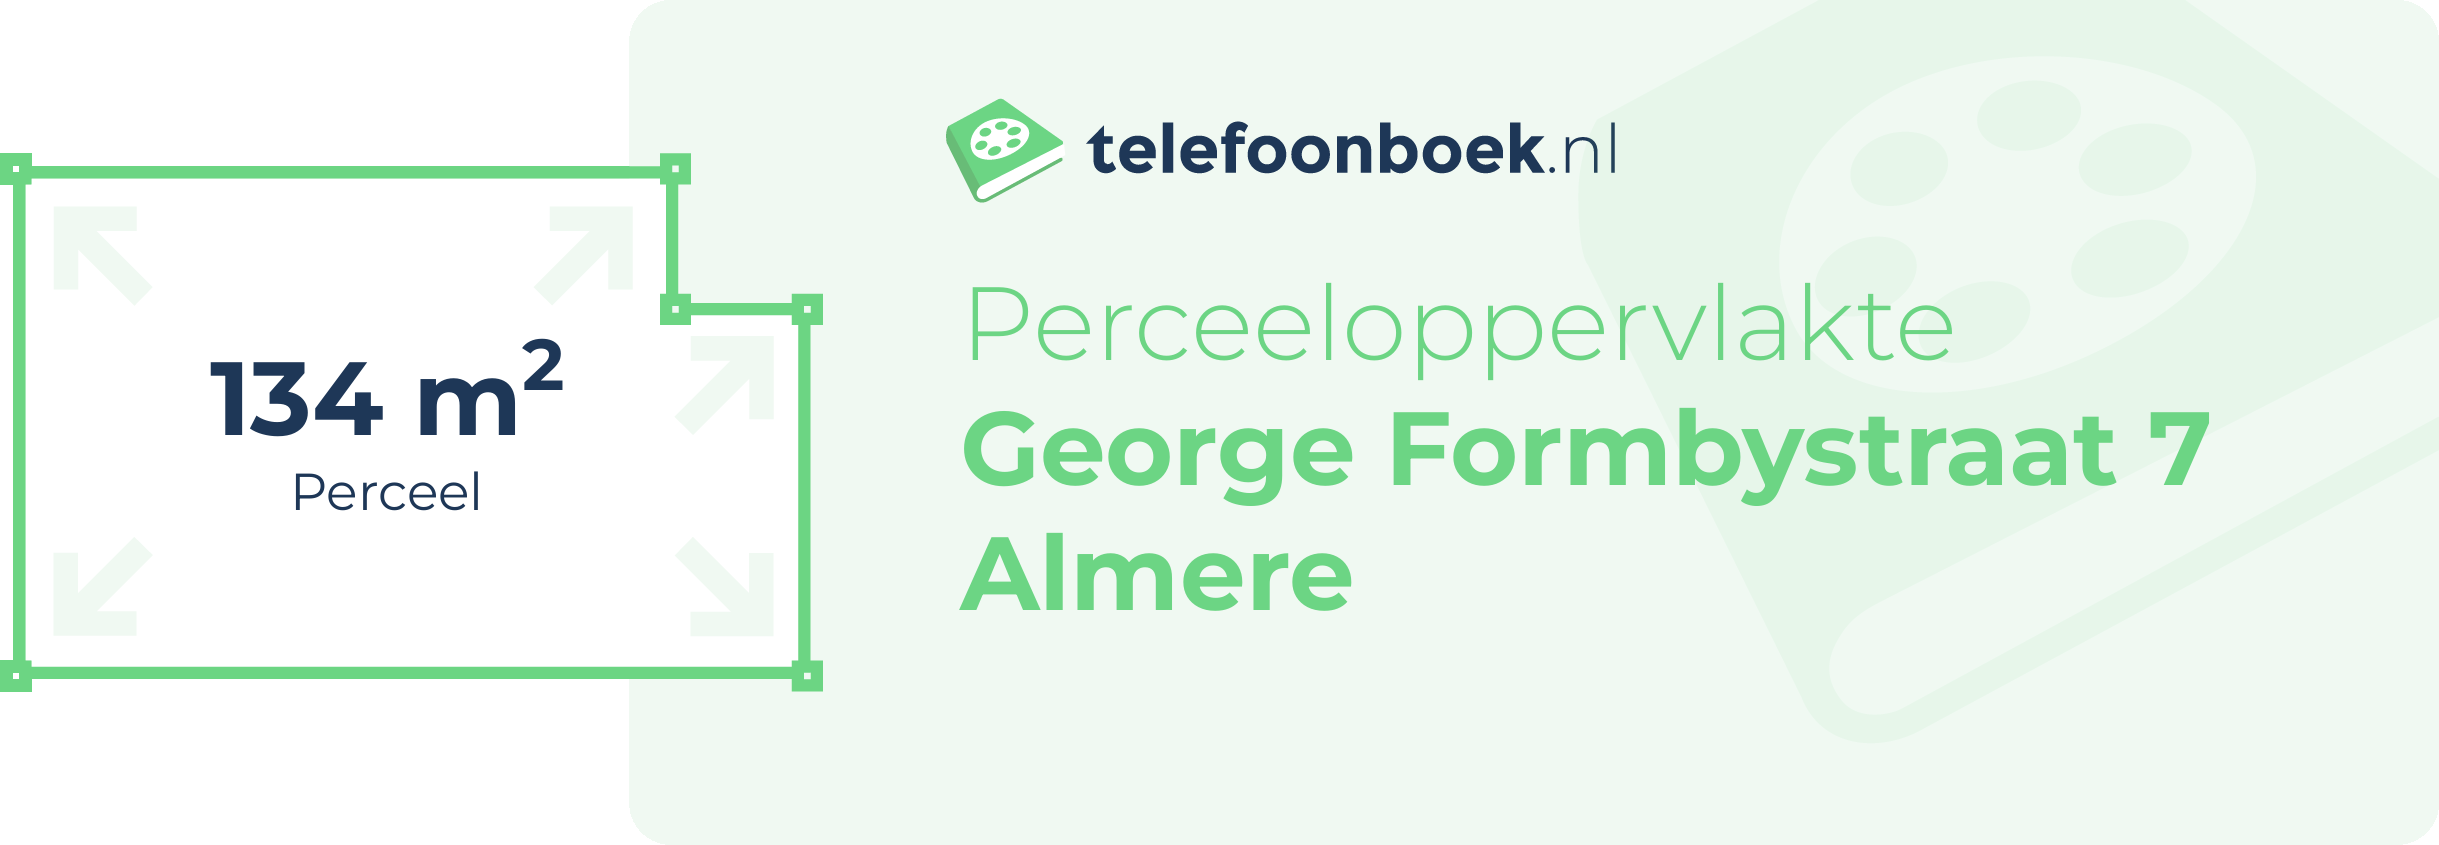 Perceeloppervlakte George Formbystraat 7 Almere